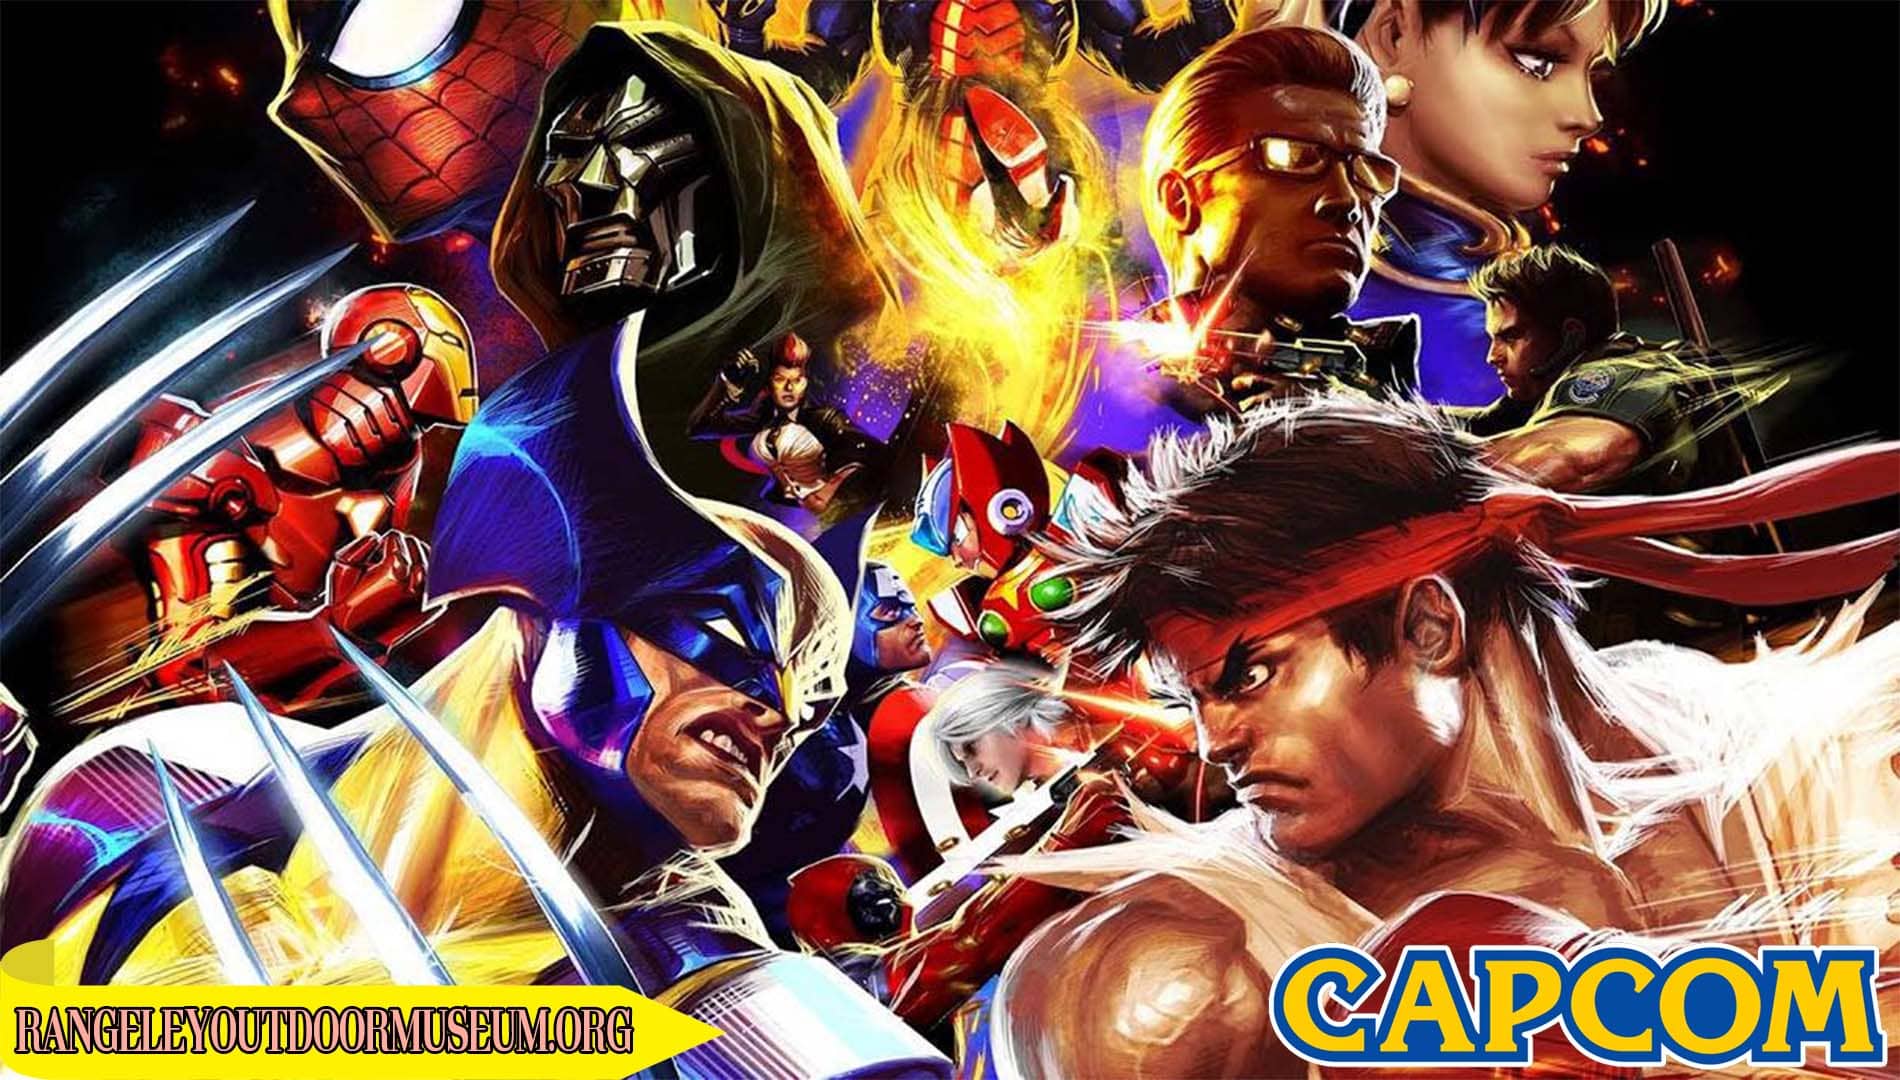 Capcom: The Legendary Game Developer Reshaping the Gaming World